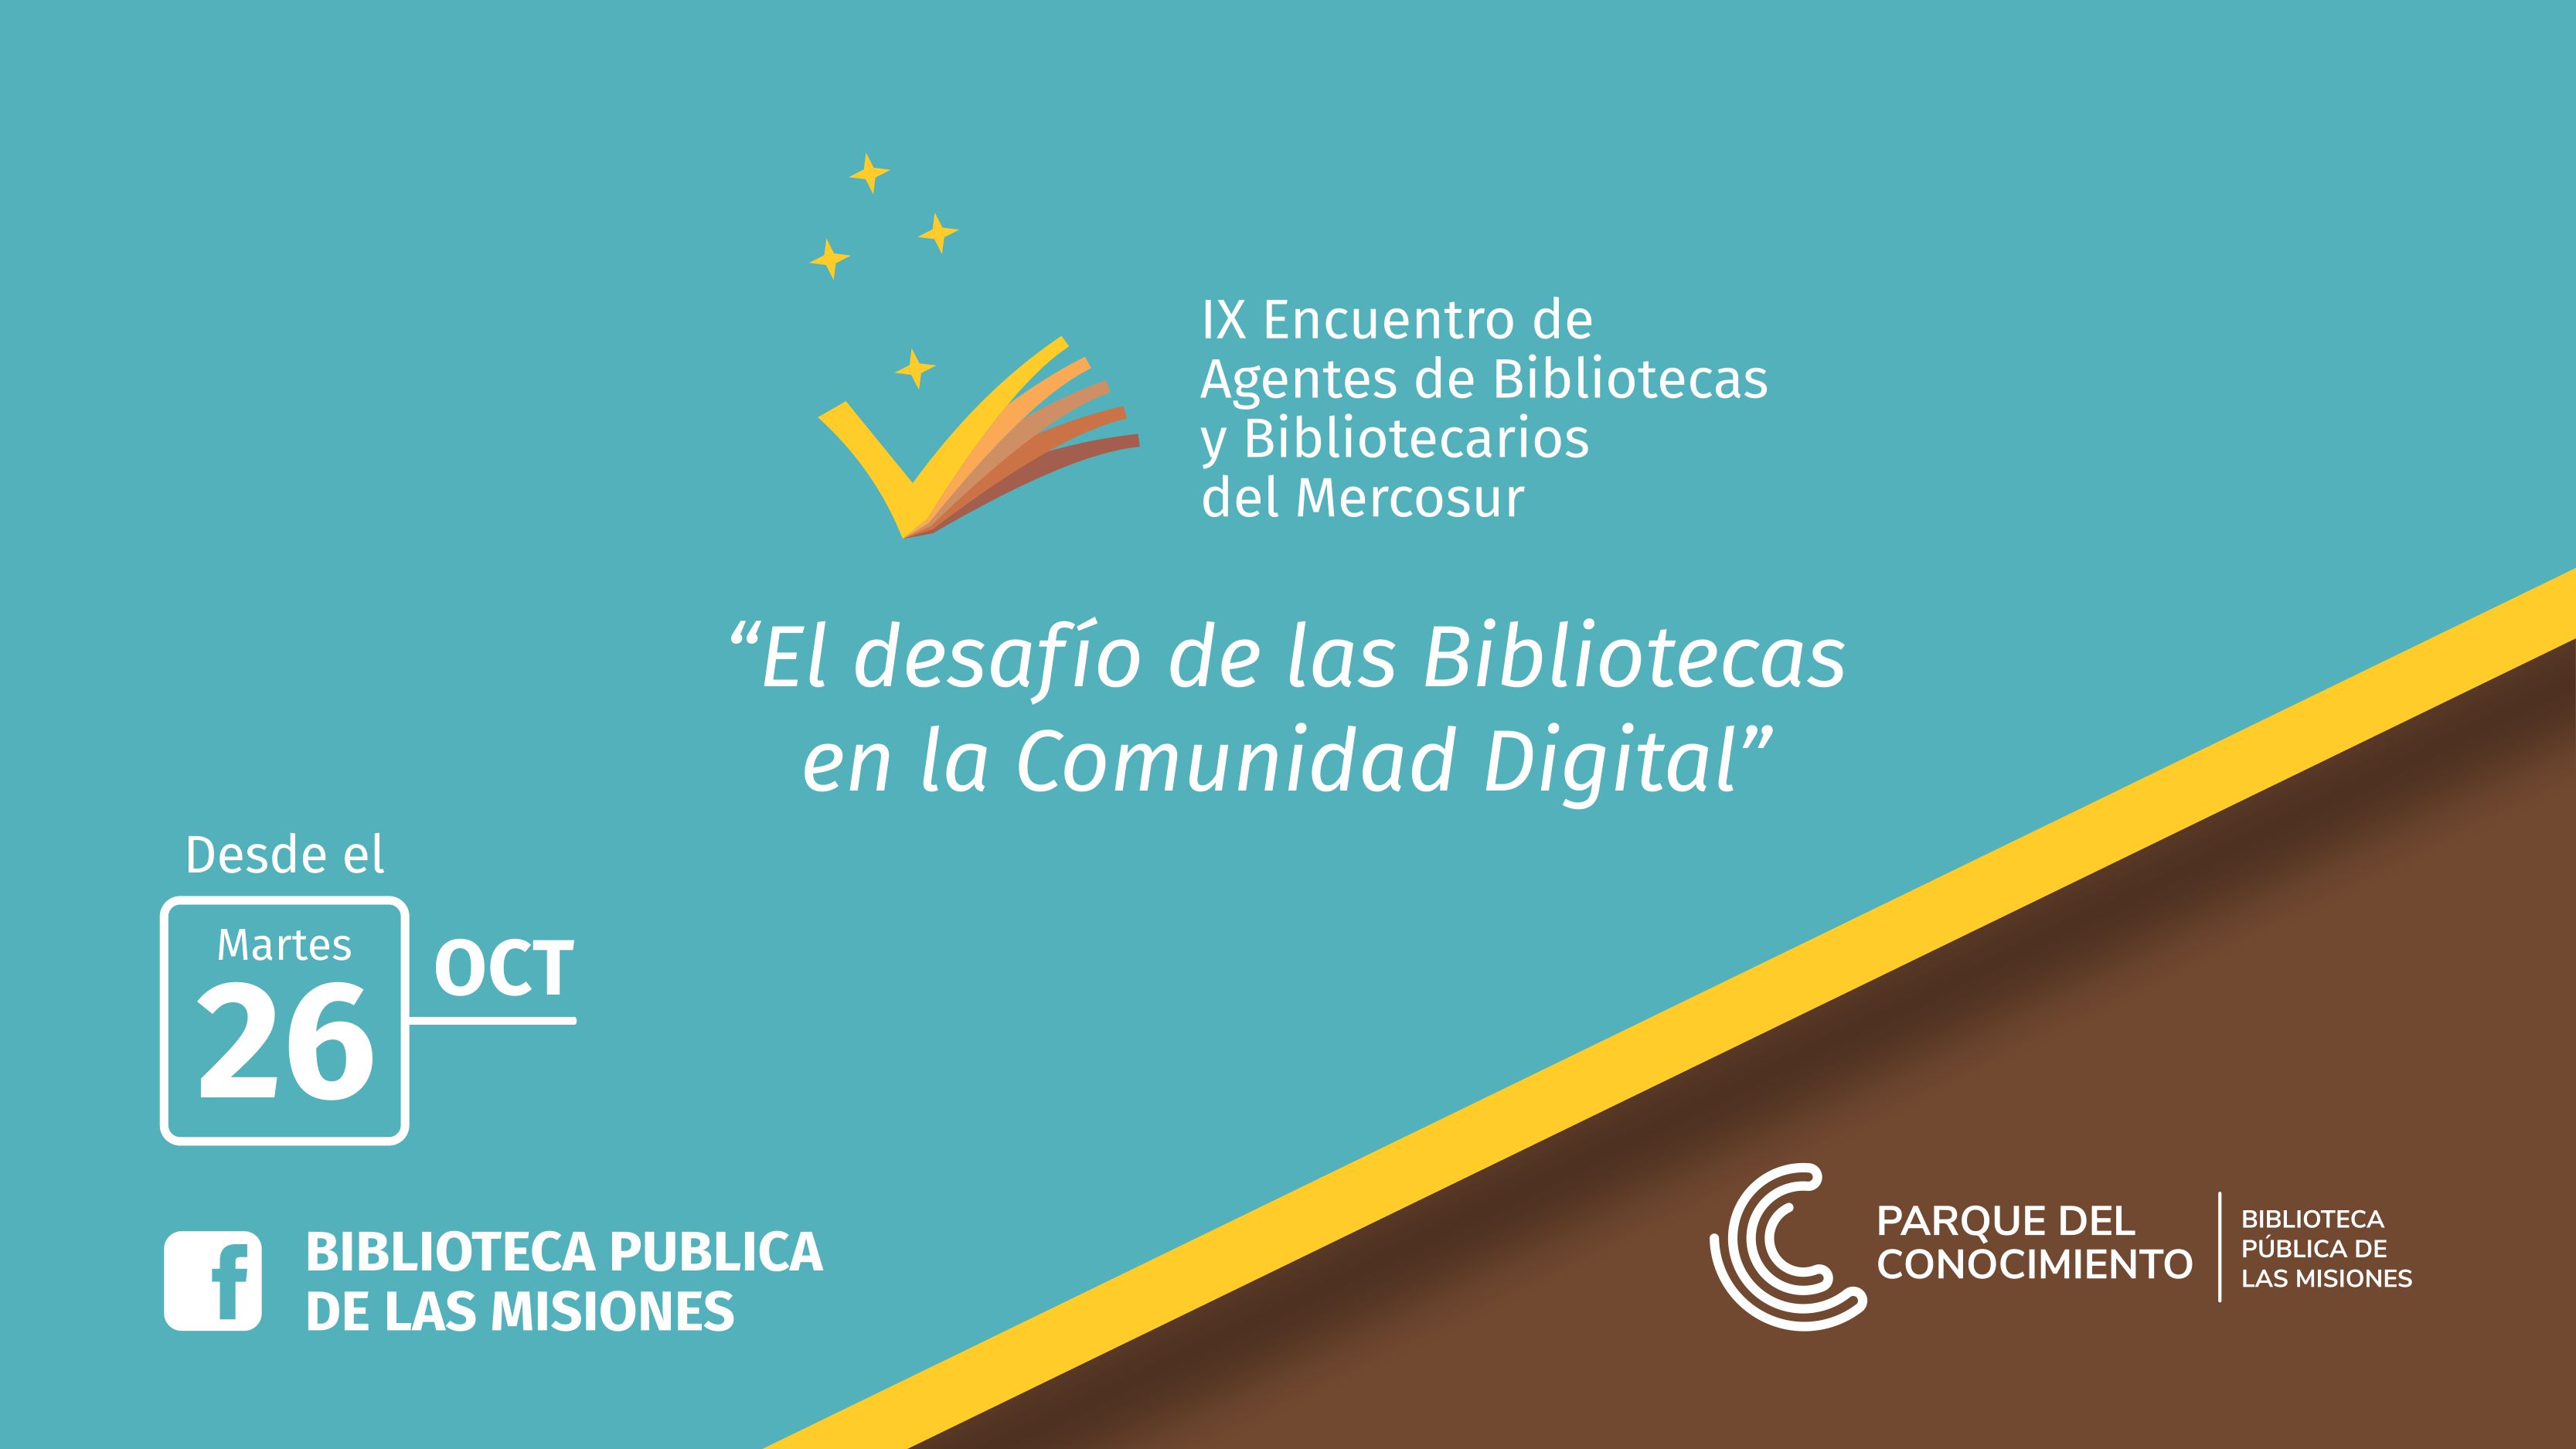 IX Encuentro de Agentes de Bibliotecas y Bibliotecarios del Mercosur